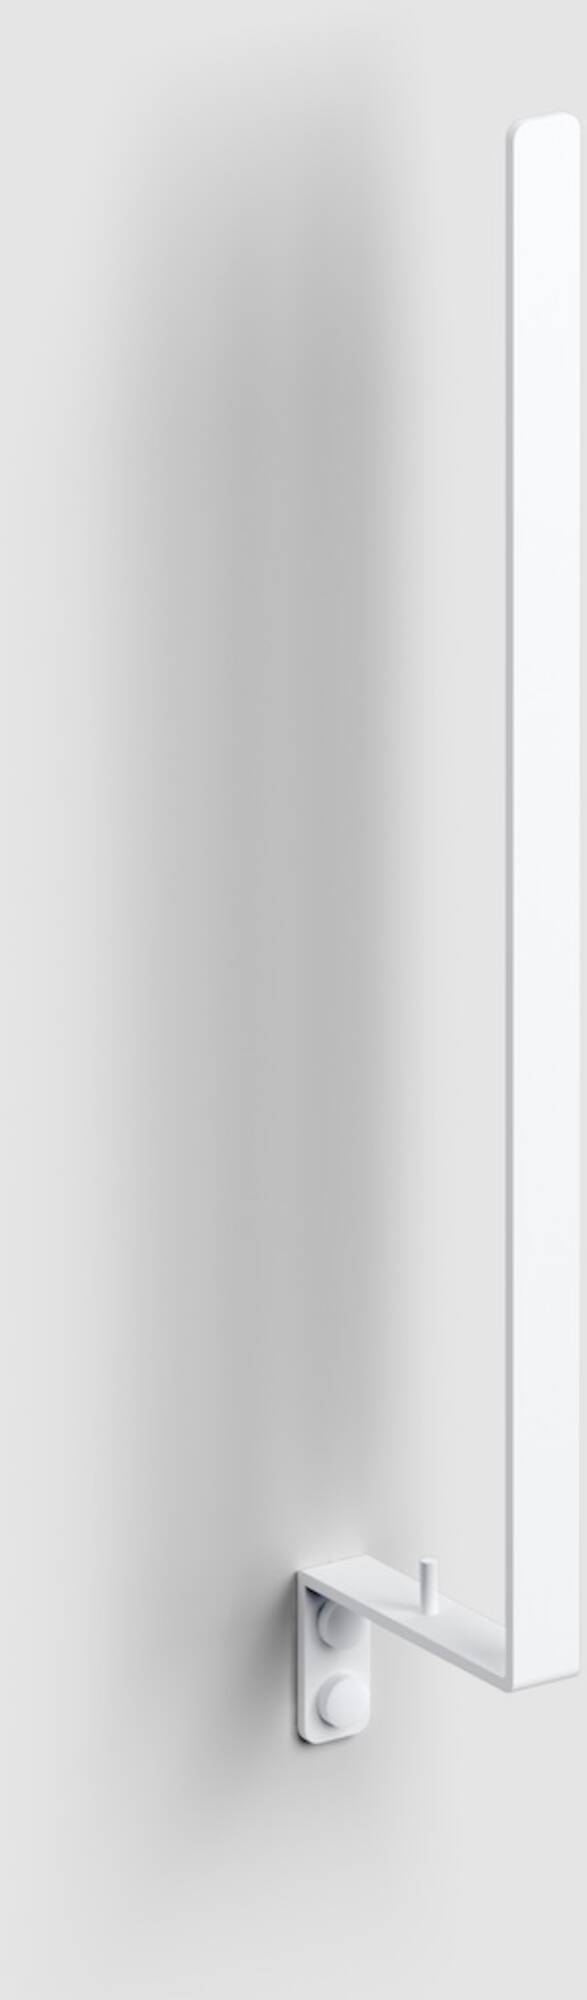 Clou - Fold Ersatzrollenhalter 1,8x8,5x39 cm Matt Weiß